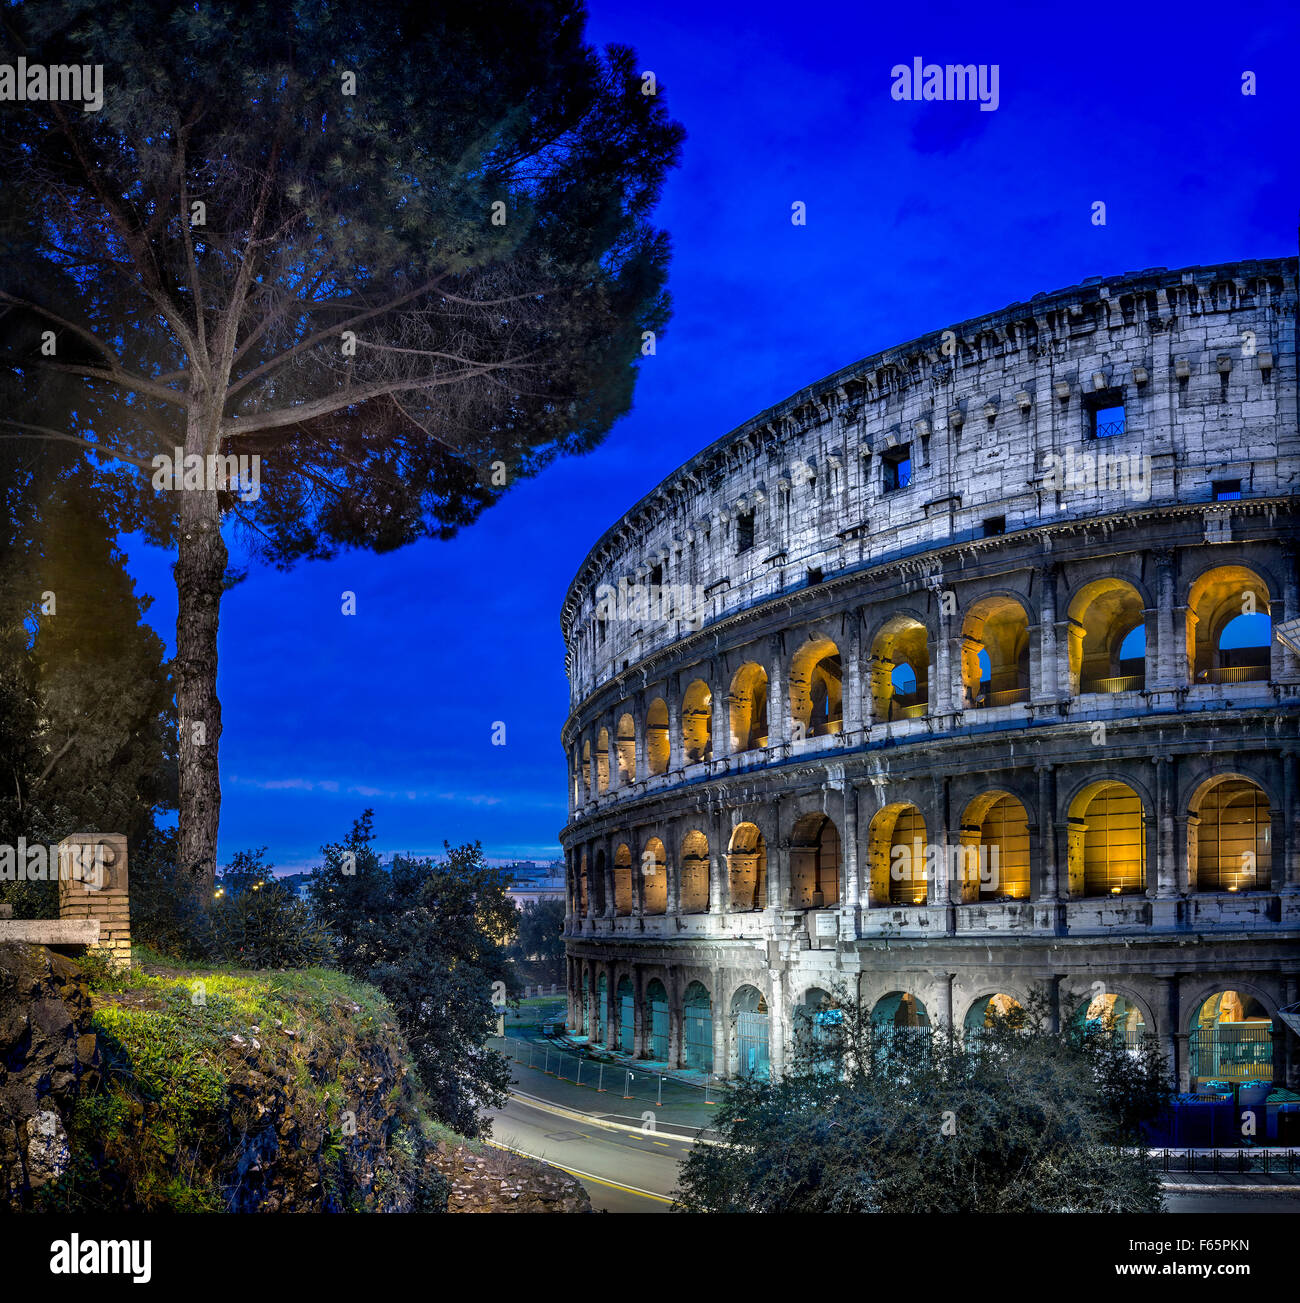 Coliseum, The Colosseum, Rome, Lazio region, Italy Stock Photo